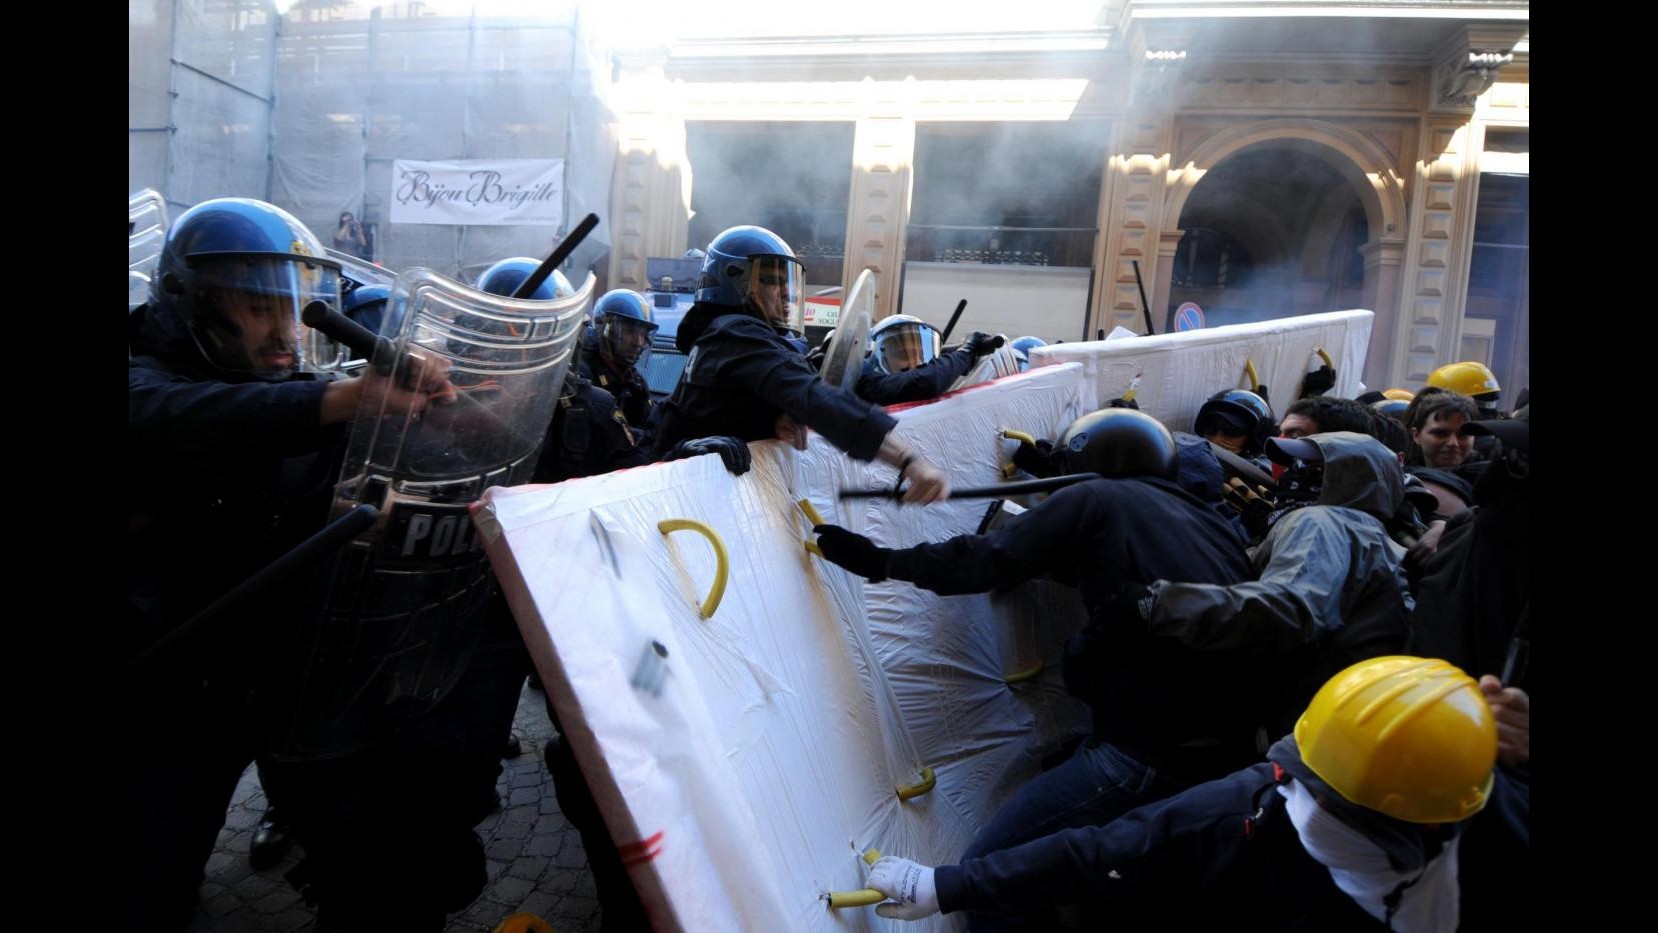 Monti a Bologna, proteste: cariche e petardi, 12 agenti e cc contusi